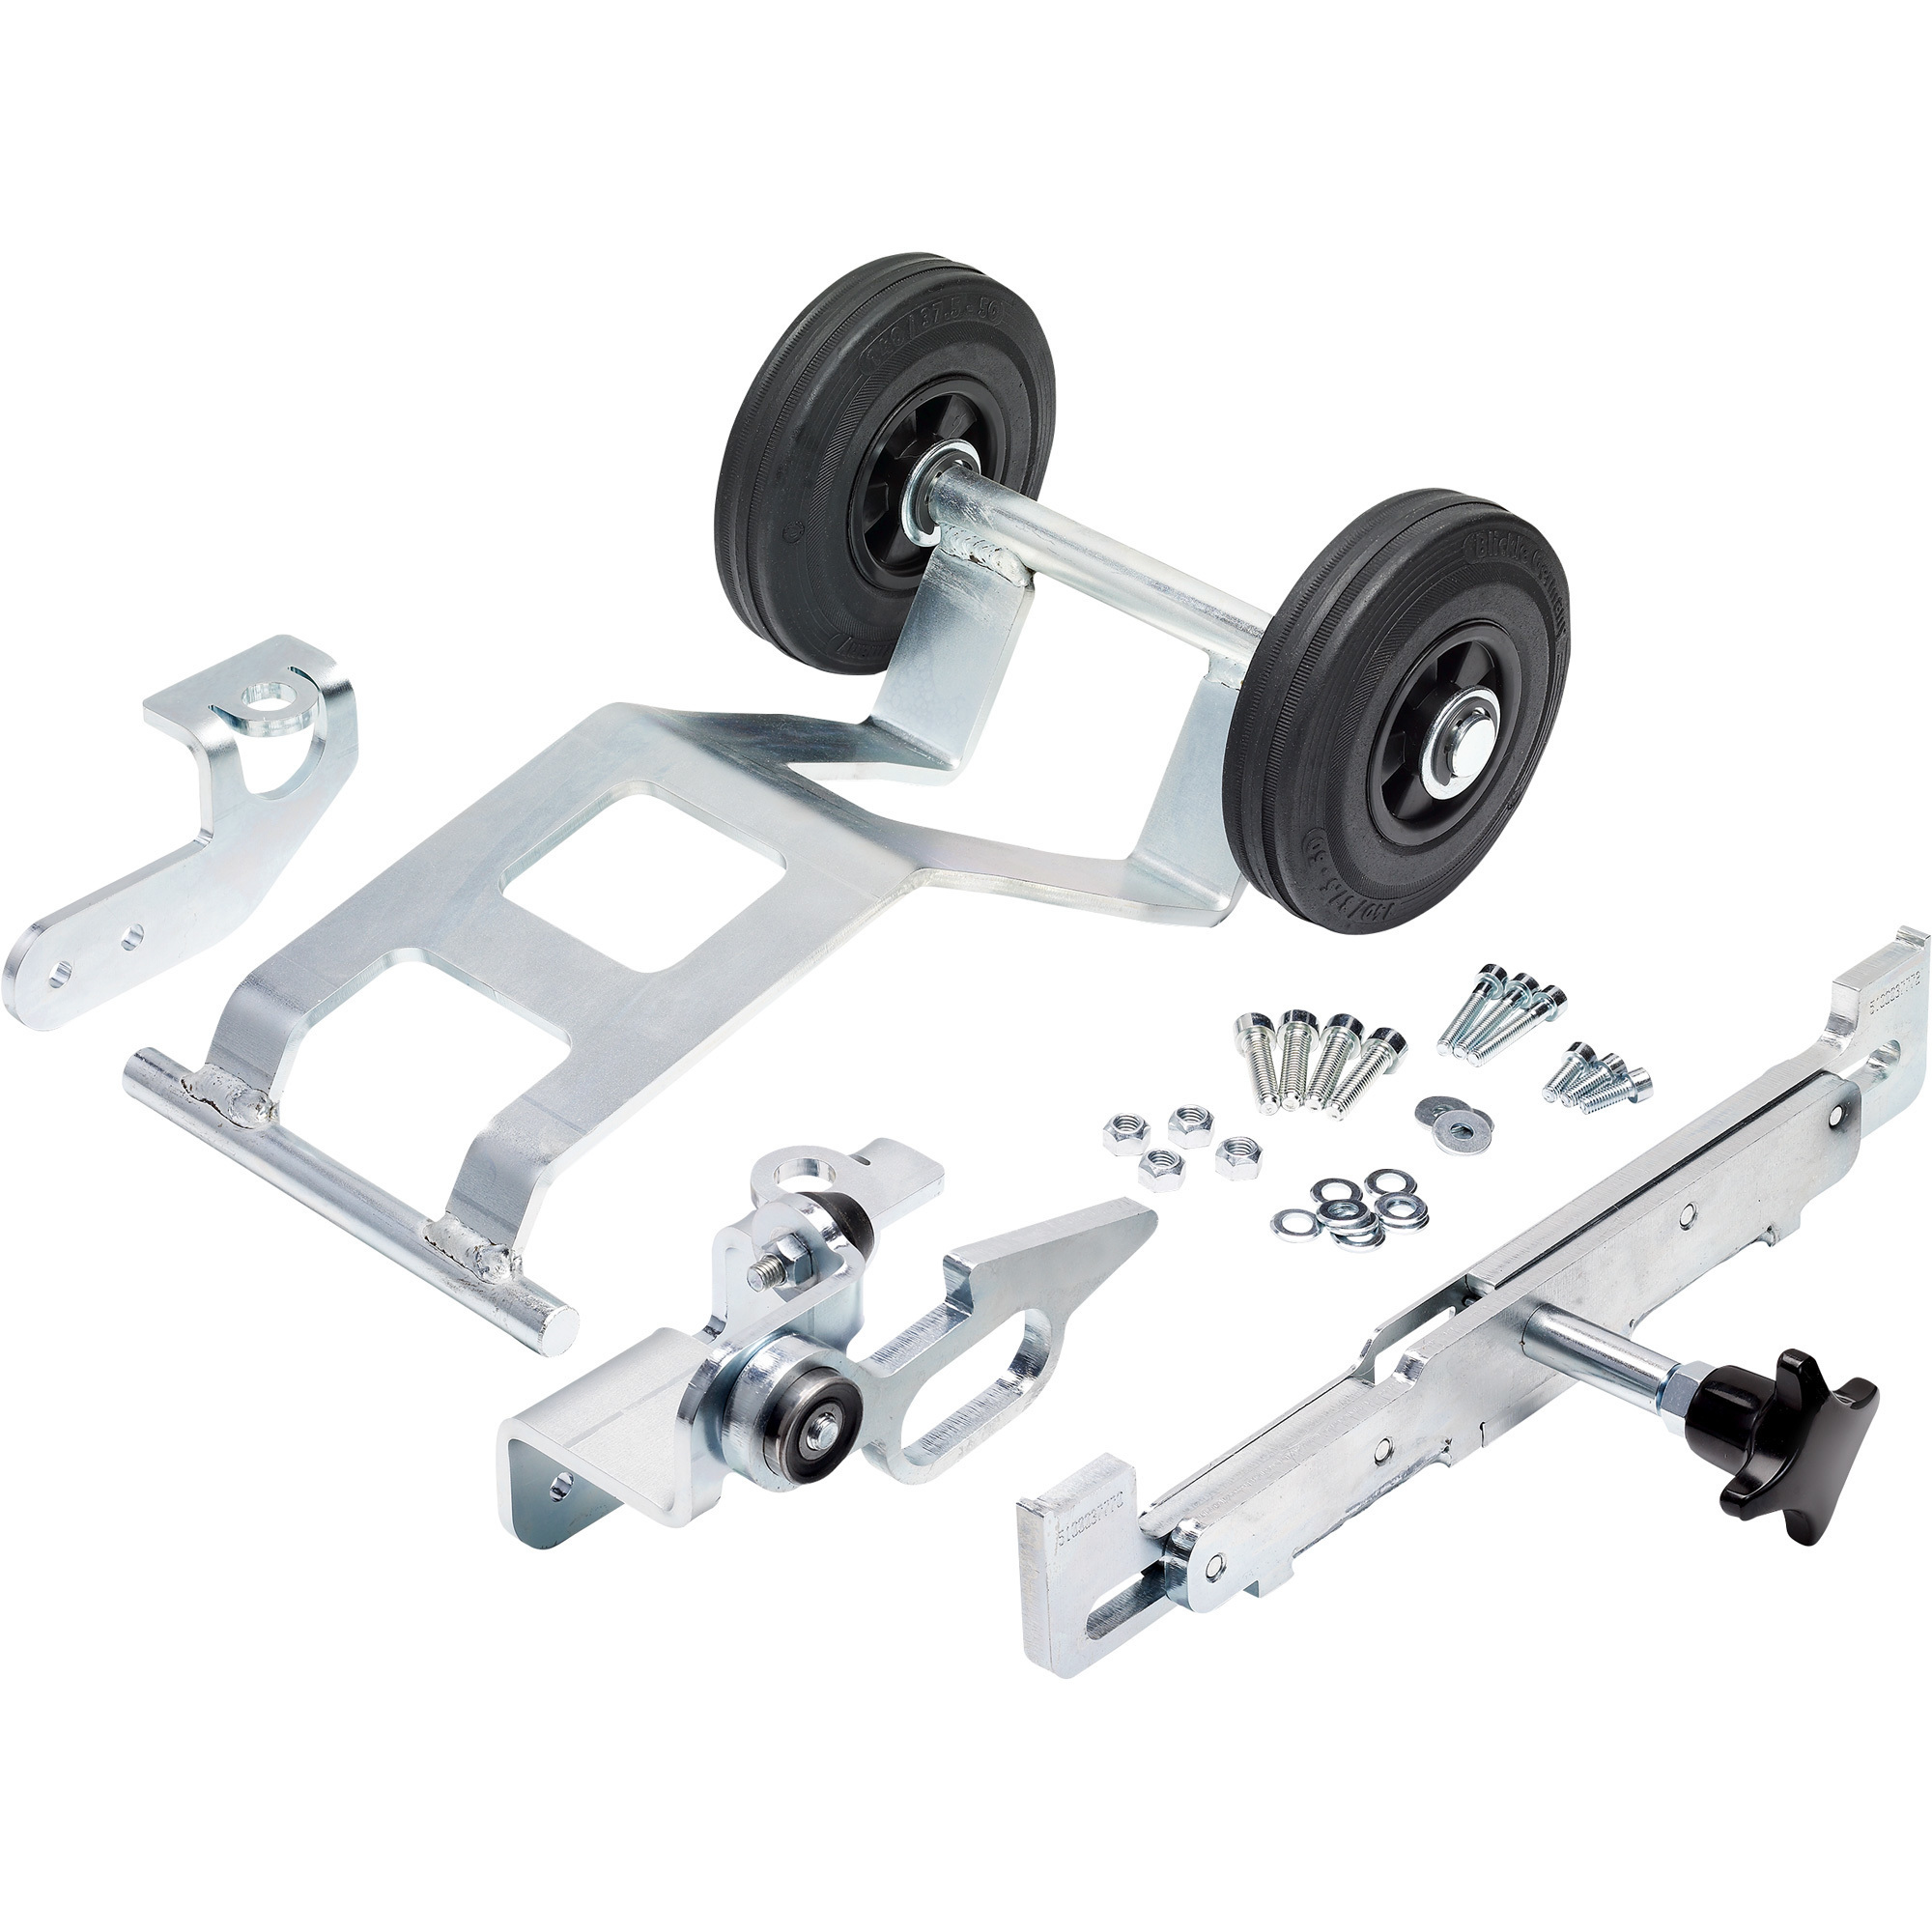 Wacker Neuson Wheel Kit, Model 5100041384, For Value Vibratory Plate Models VP1340s, VP1550s and VP2050s